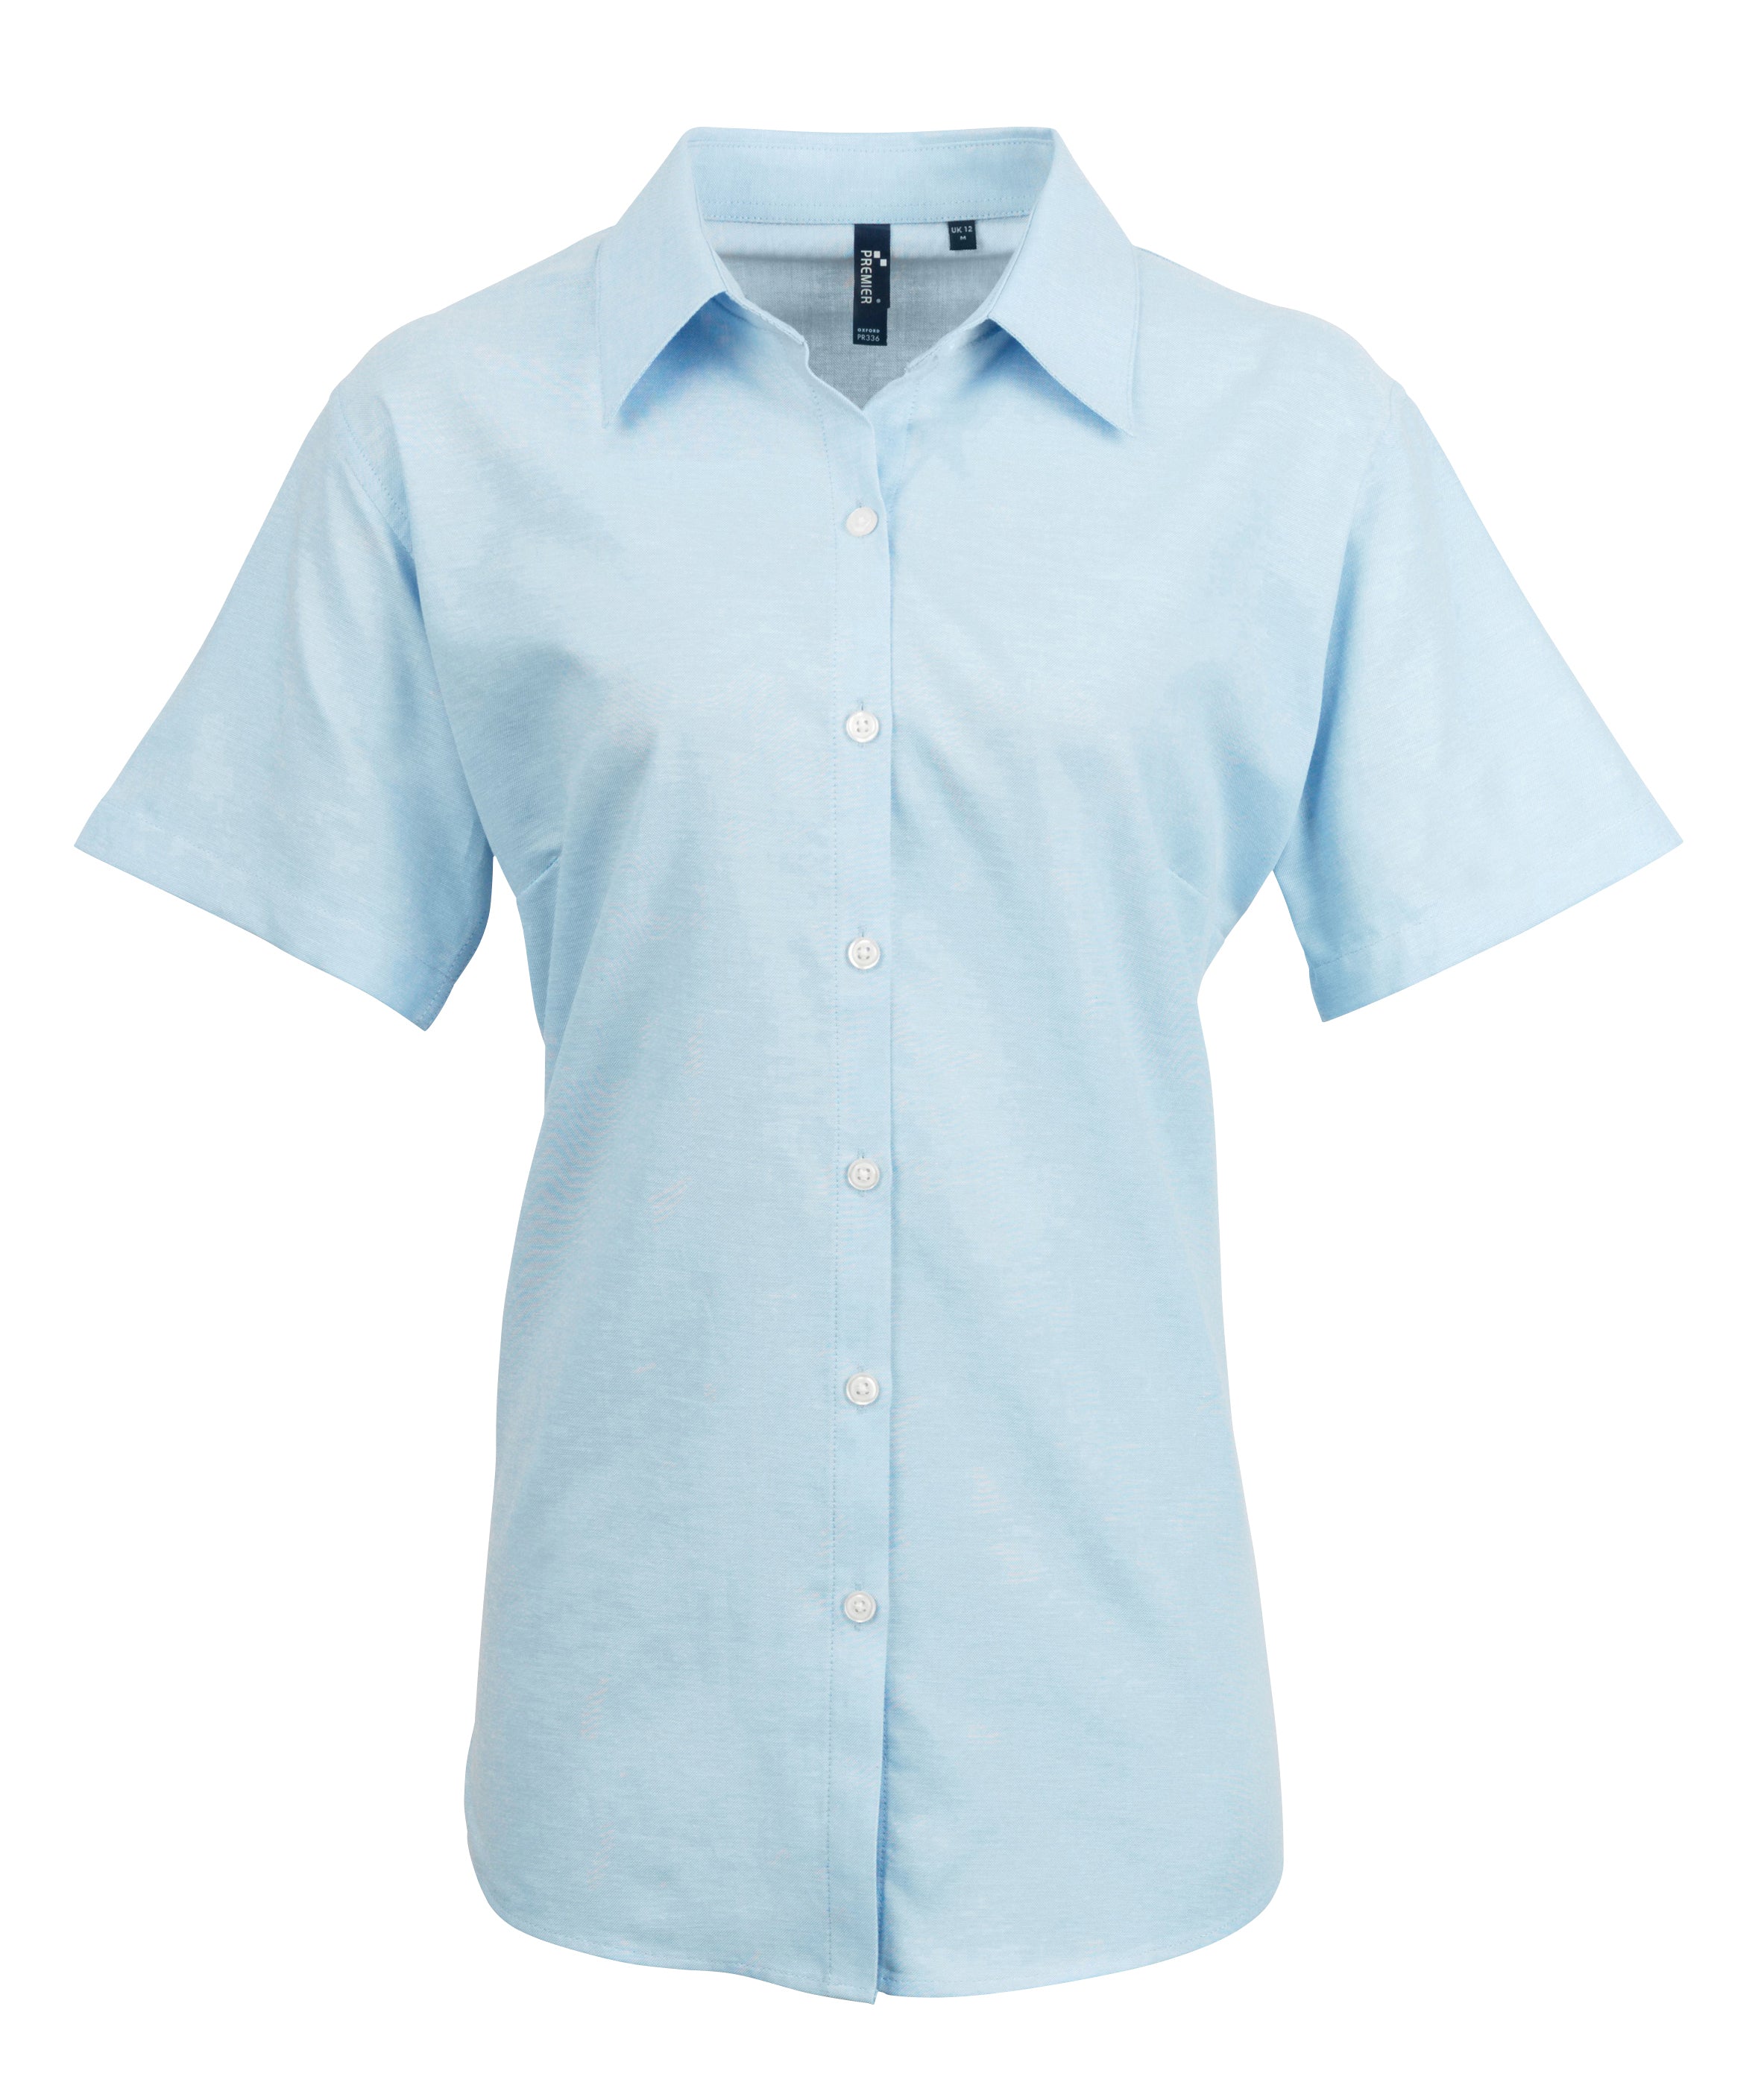 Blue Light Short Sleeve Dress Shirt for Women